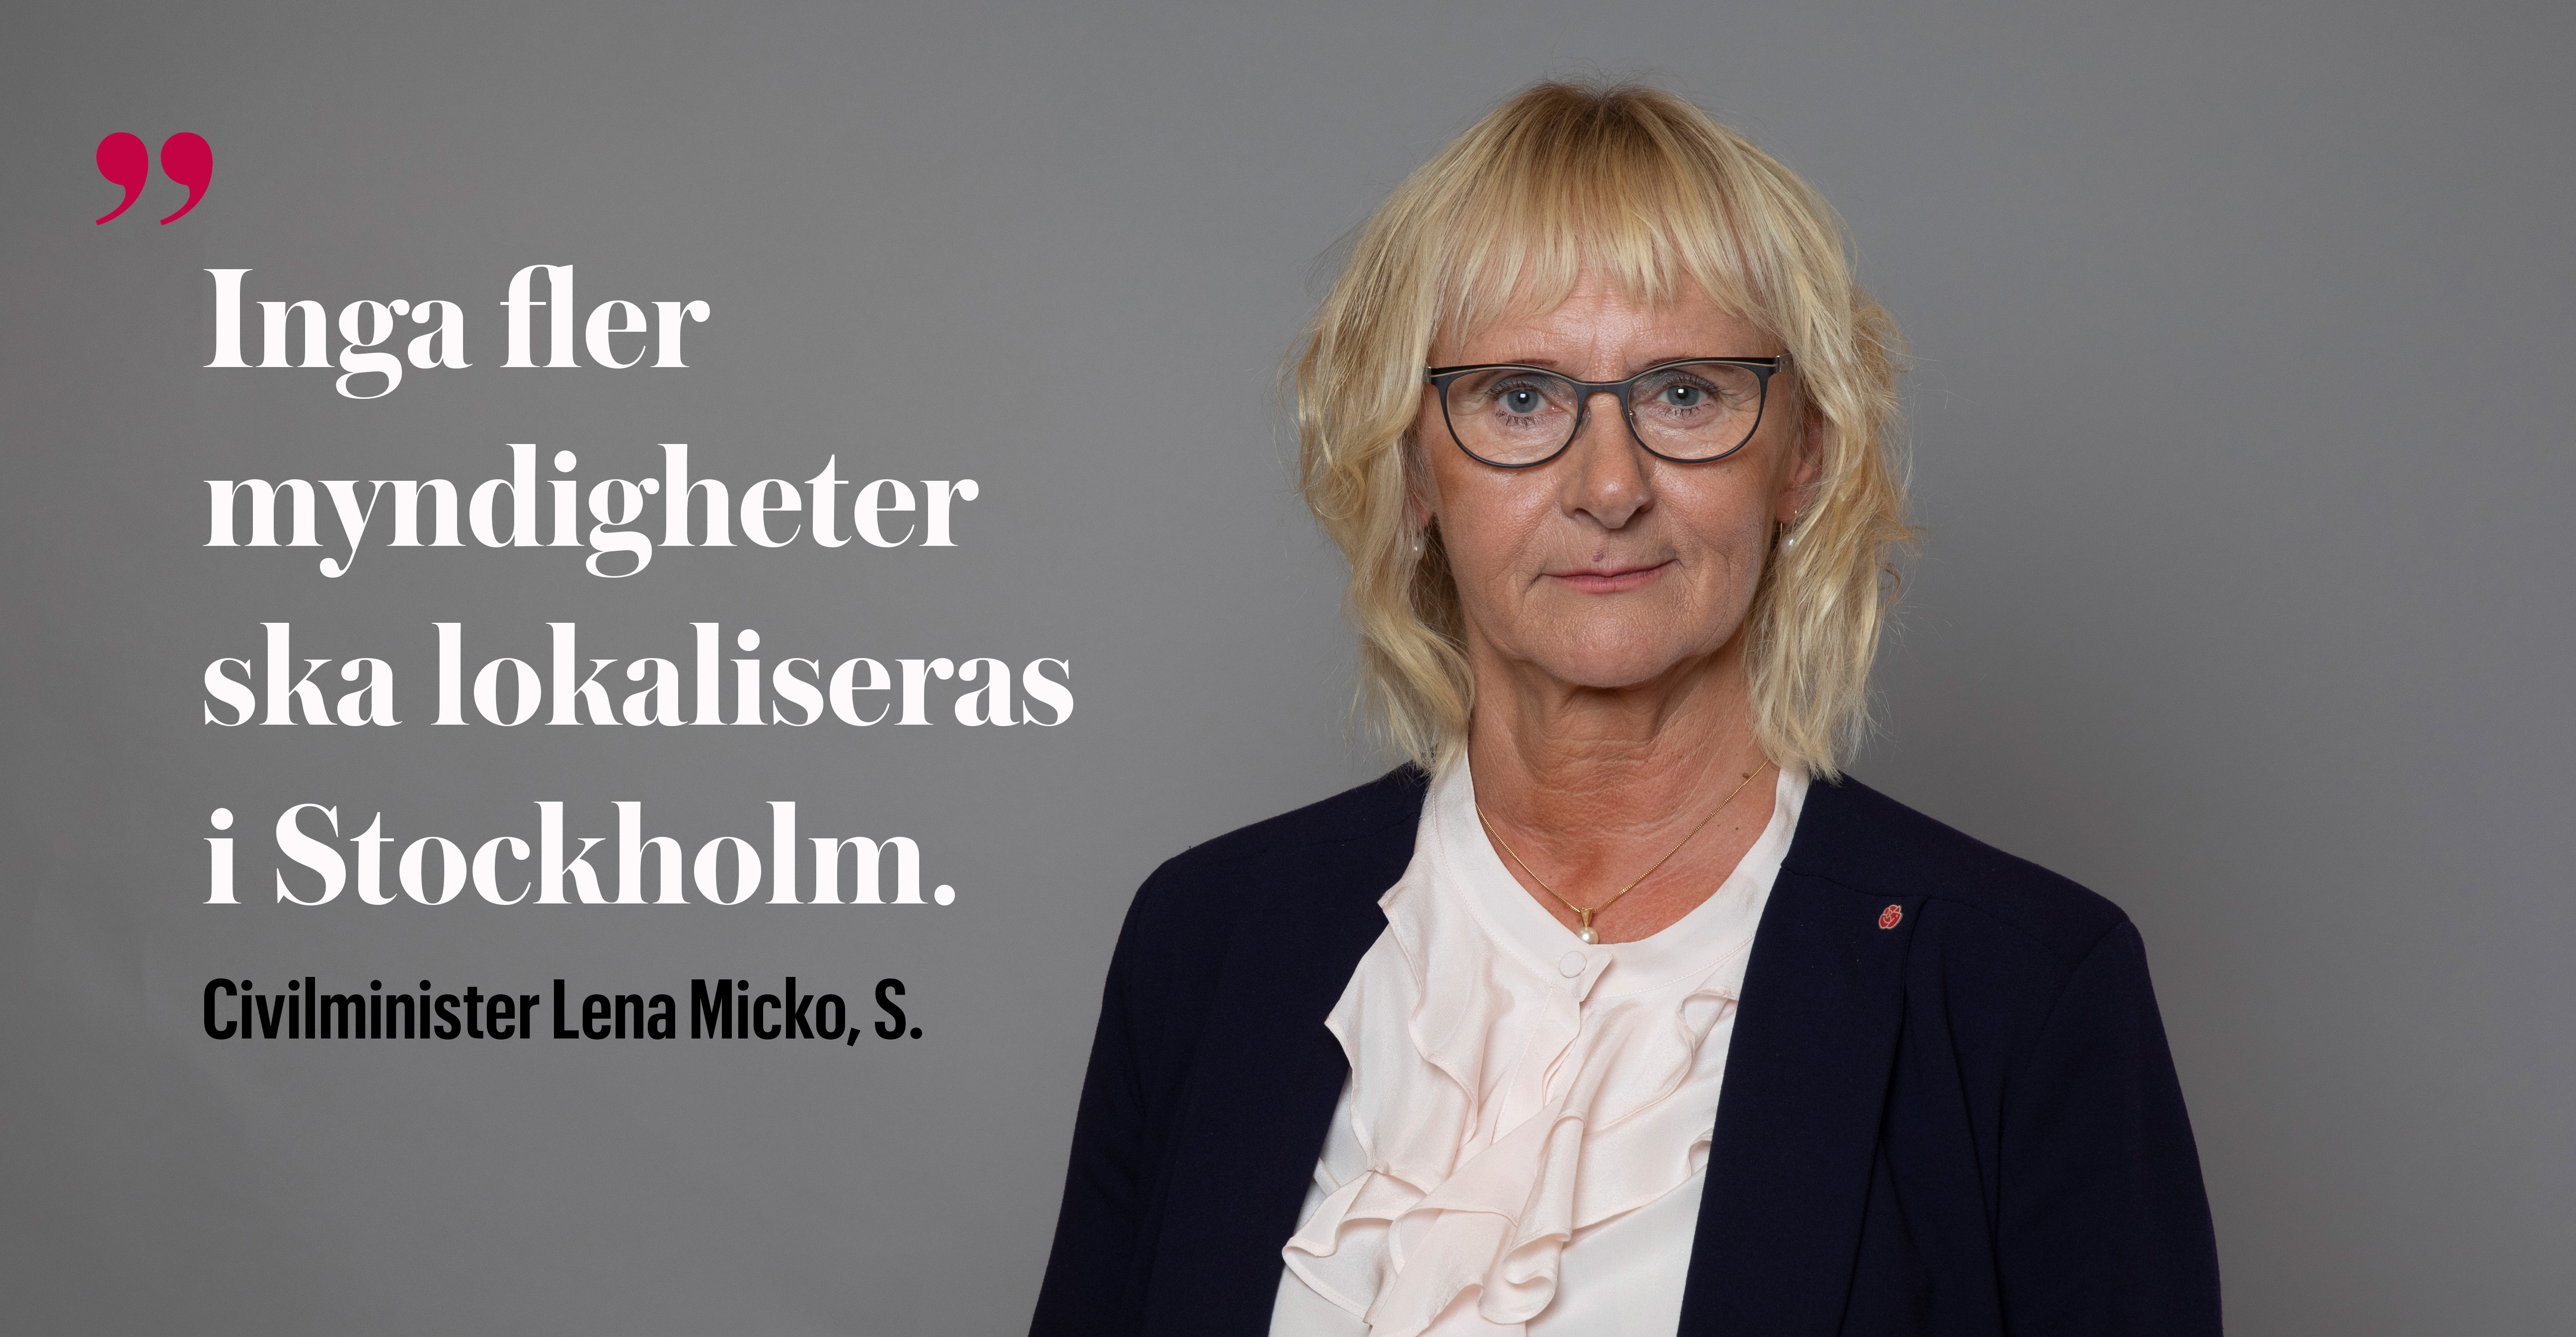 Utgångspunkten är att inga fler myndigheter ska lokaliseras i Stockholm under innevarande mandatperiod. Arbetet med att fundera ut var de ska ligga i stället pågår, säger civilminister Lena Micko, S, till Publikt.